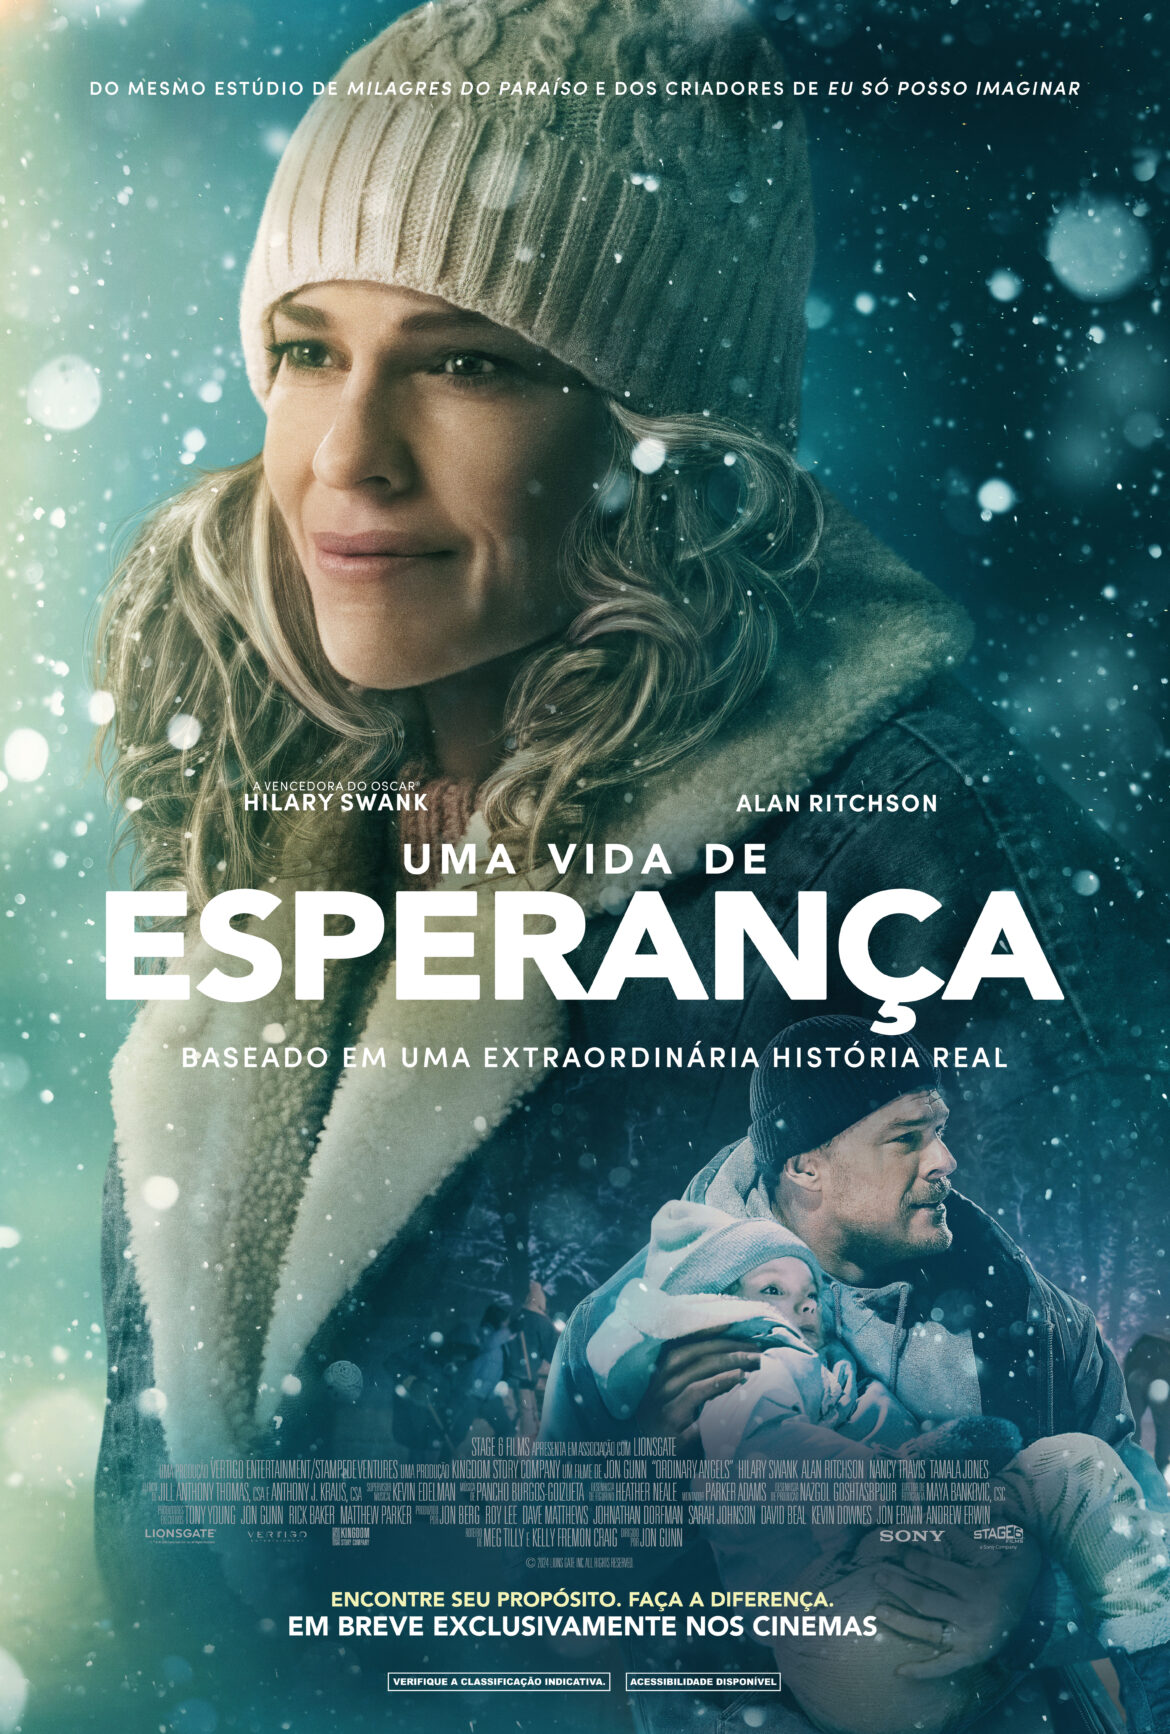 Uma Vida de Esperança estreia nesta quinta-feira, 13 de junho, nos principais cinemas do país